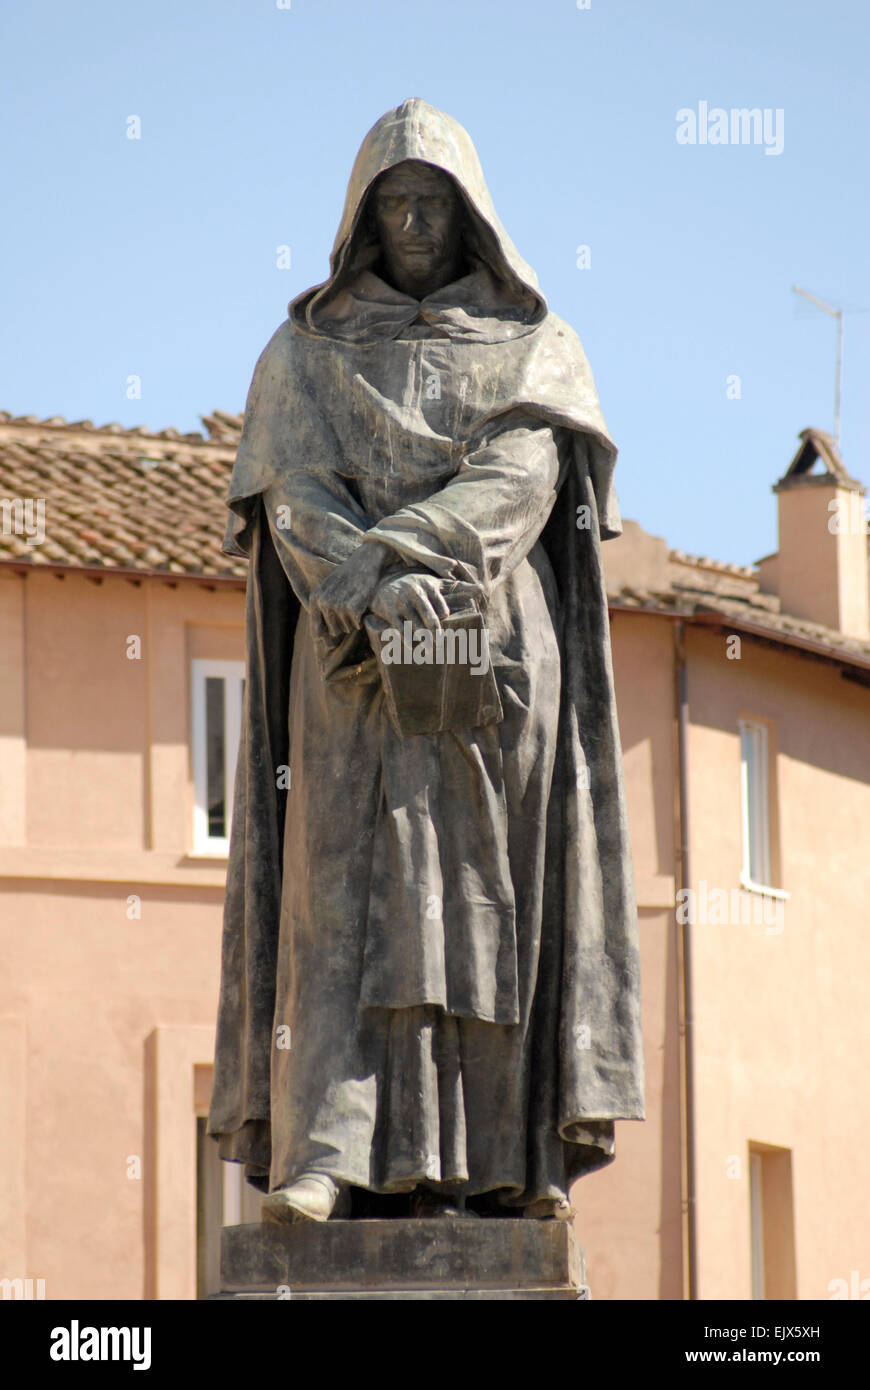 Campo de' Fiore, Roma. Statua di Giordano Bruno, illuminati monaco Rinascimentale che fu bruciato sul rogo nel 1600. Foto Stock